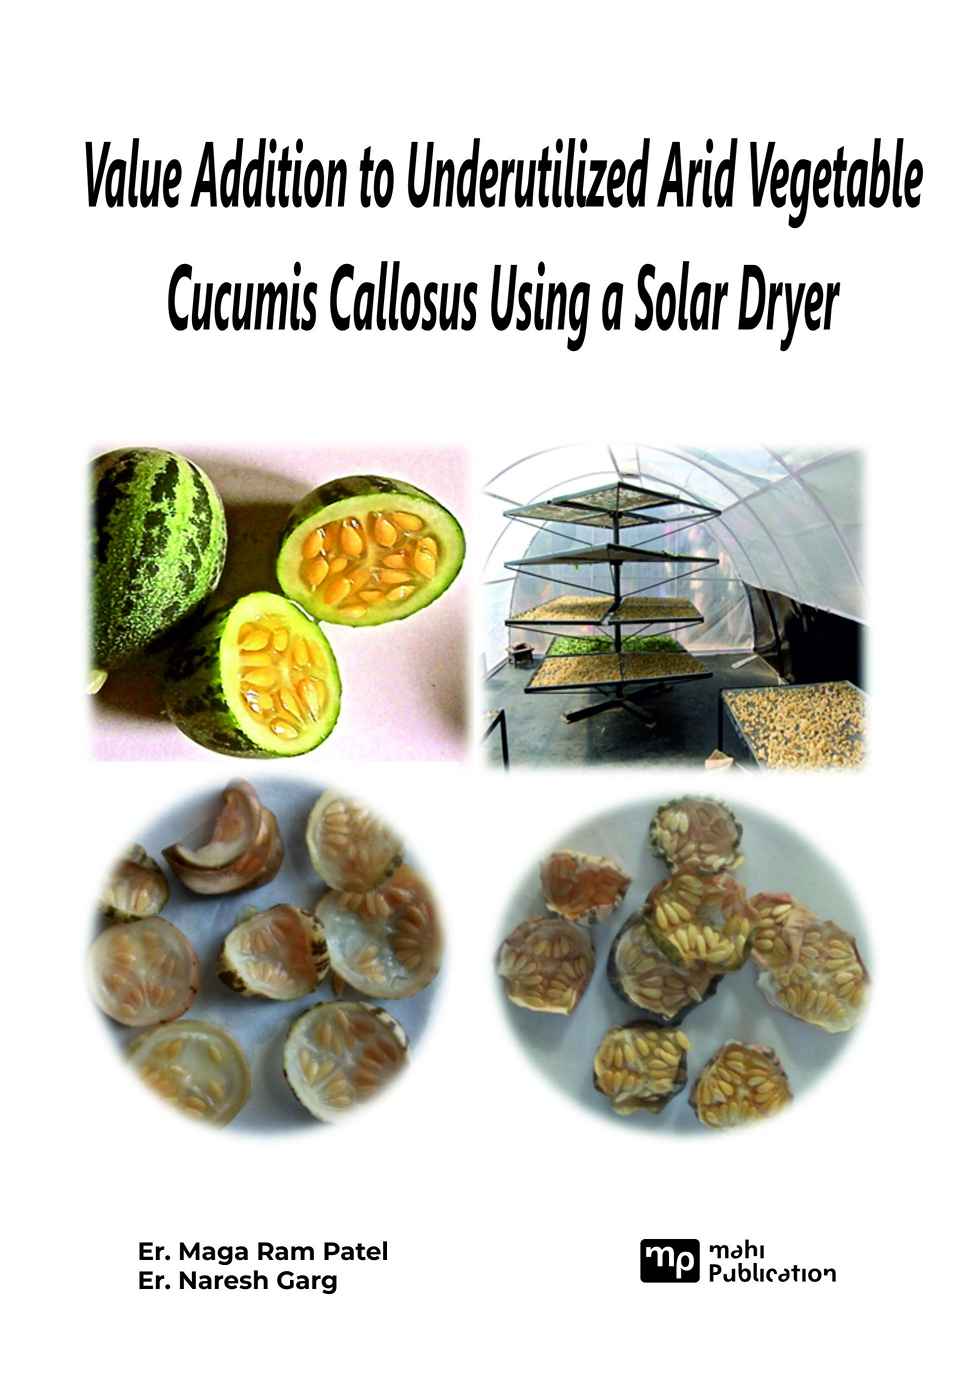 Value Addition to Underutilized Arid Vegetable Cucumis Callosus Using a Solar Dryer